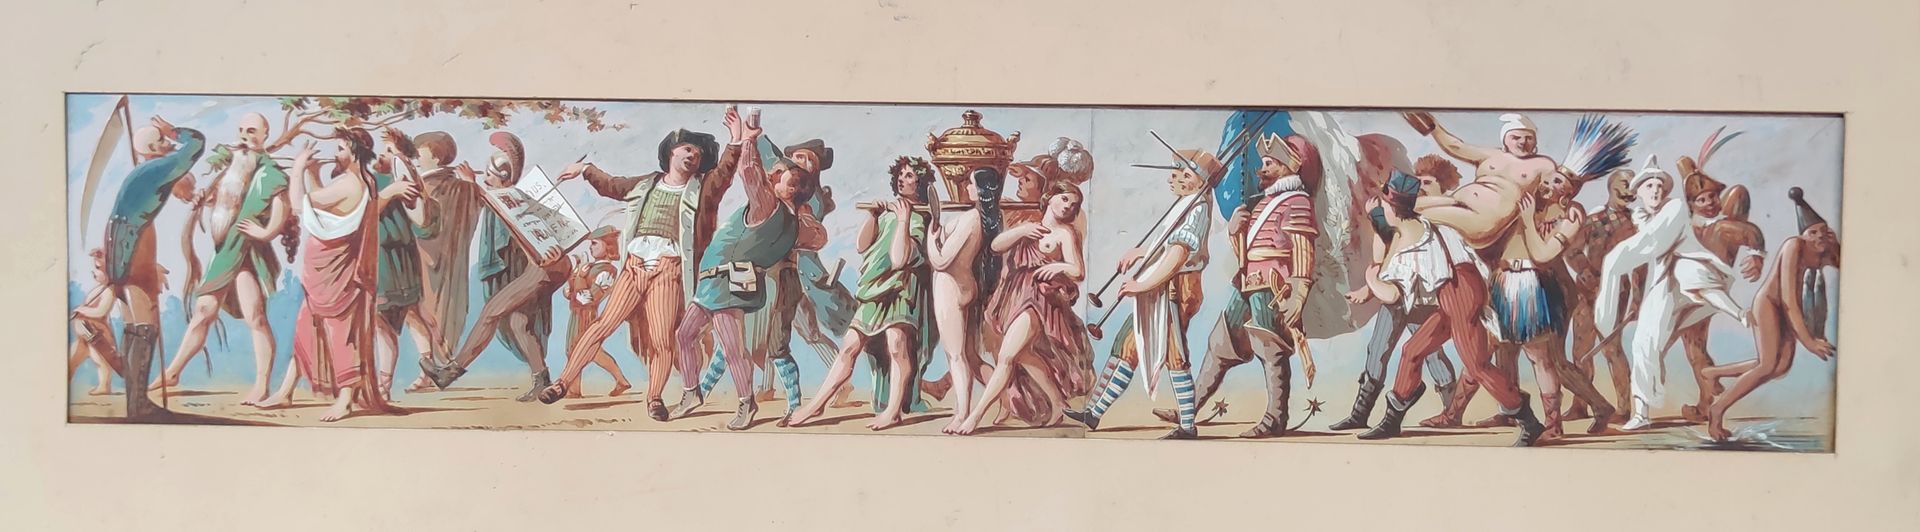 Null 法国学校(XX)

以爱情和狂欢为主题的浮雕研究

纸上水粉画

9,3 x 46,5 cm